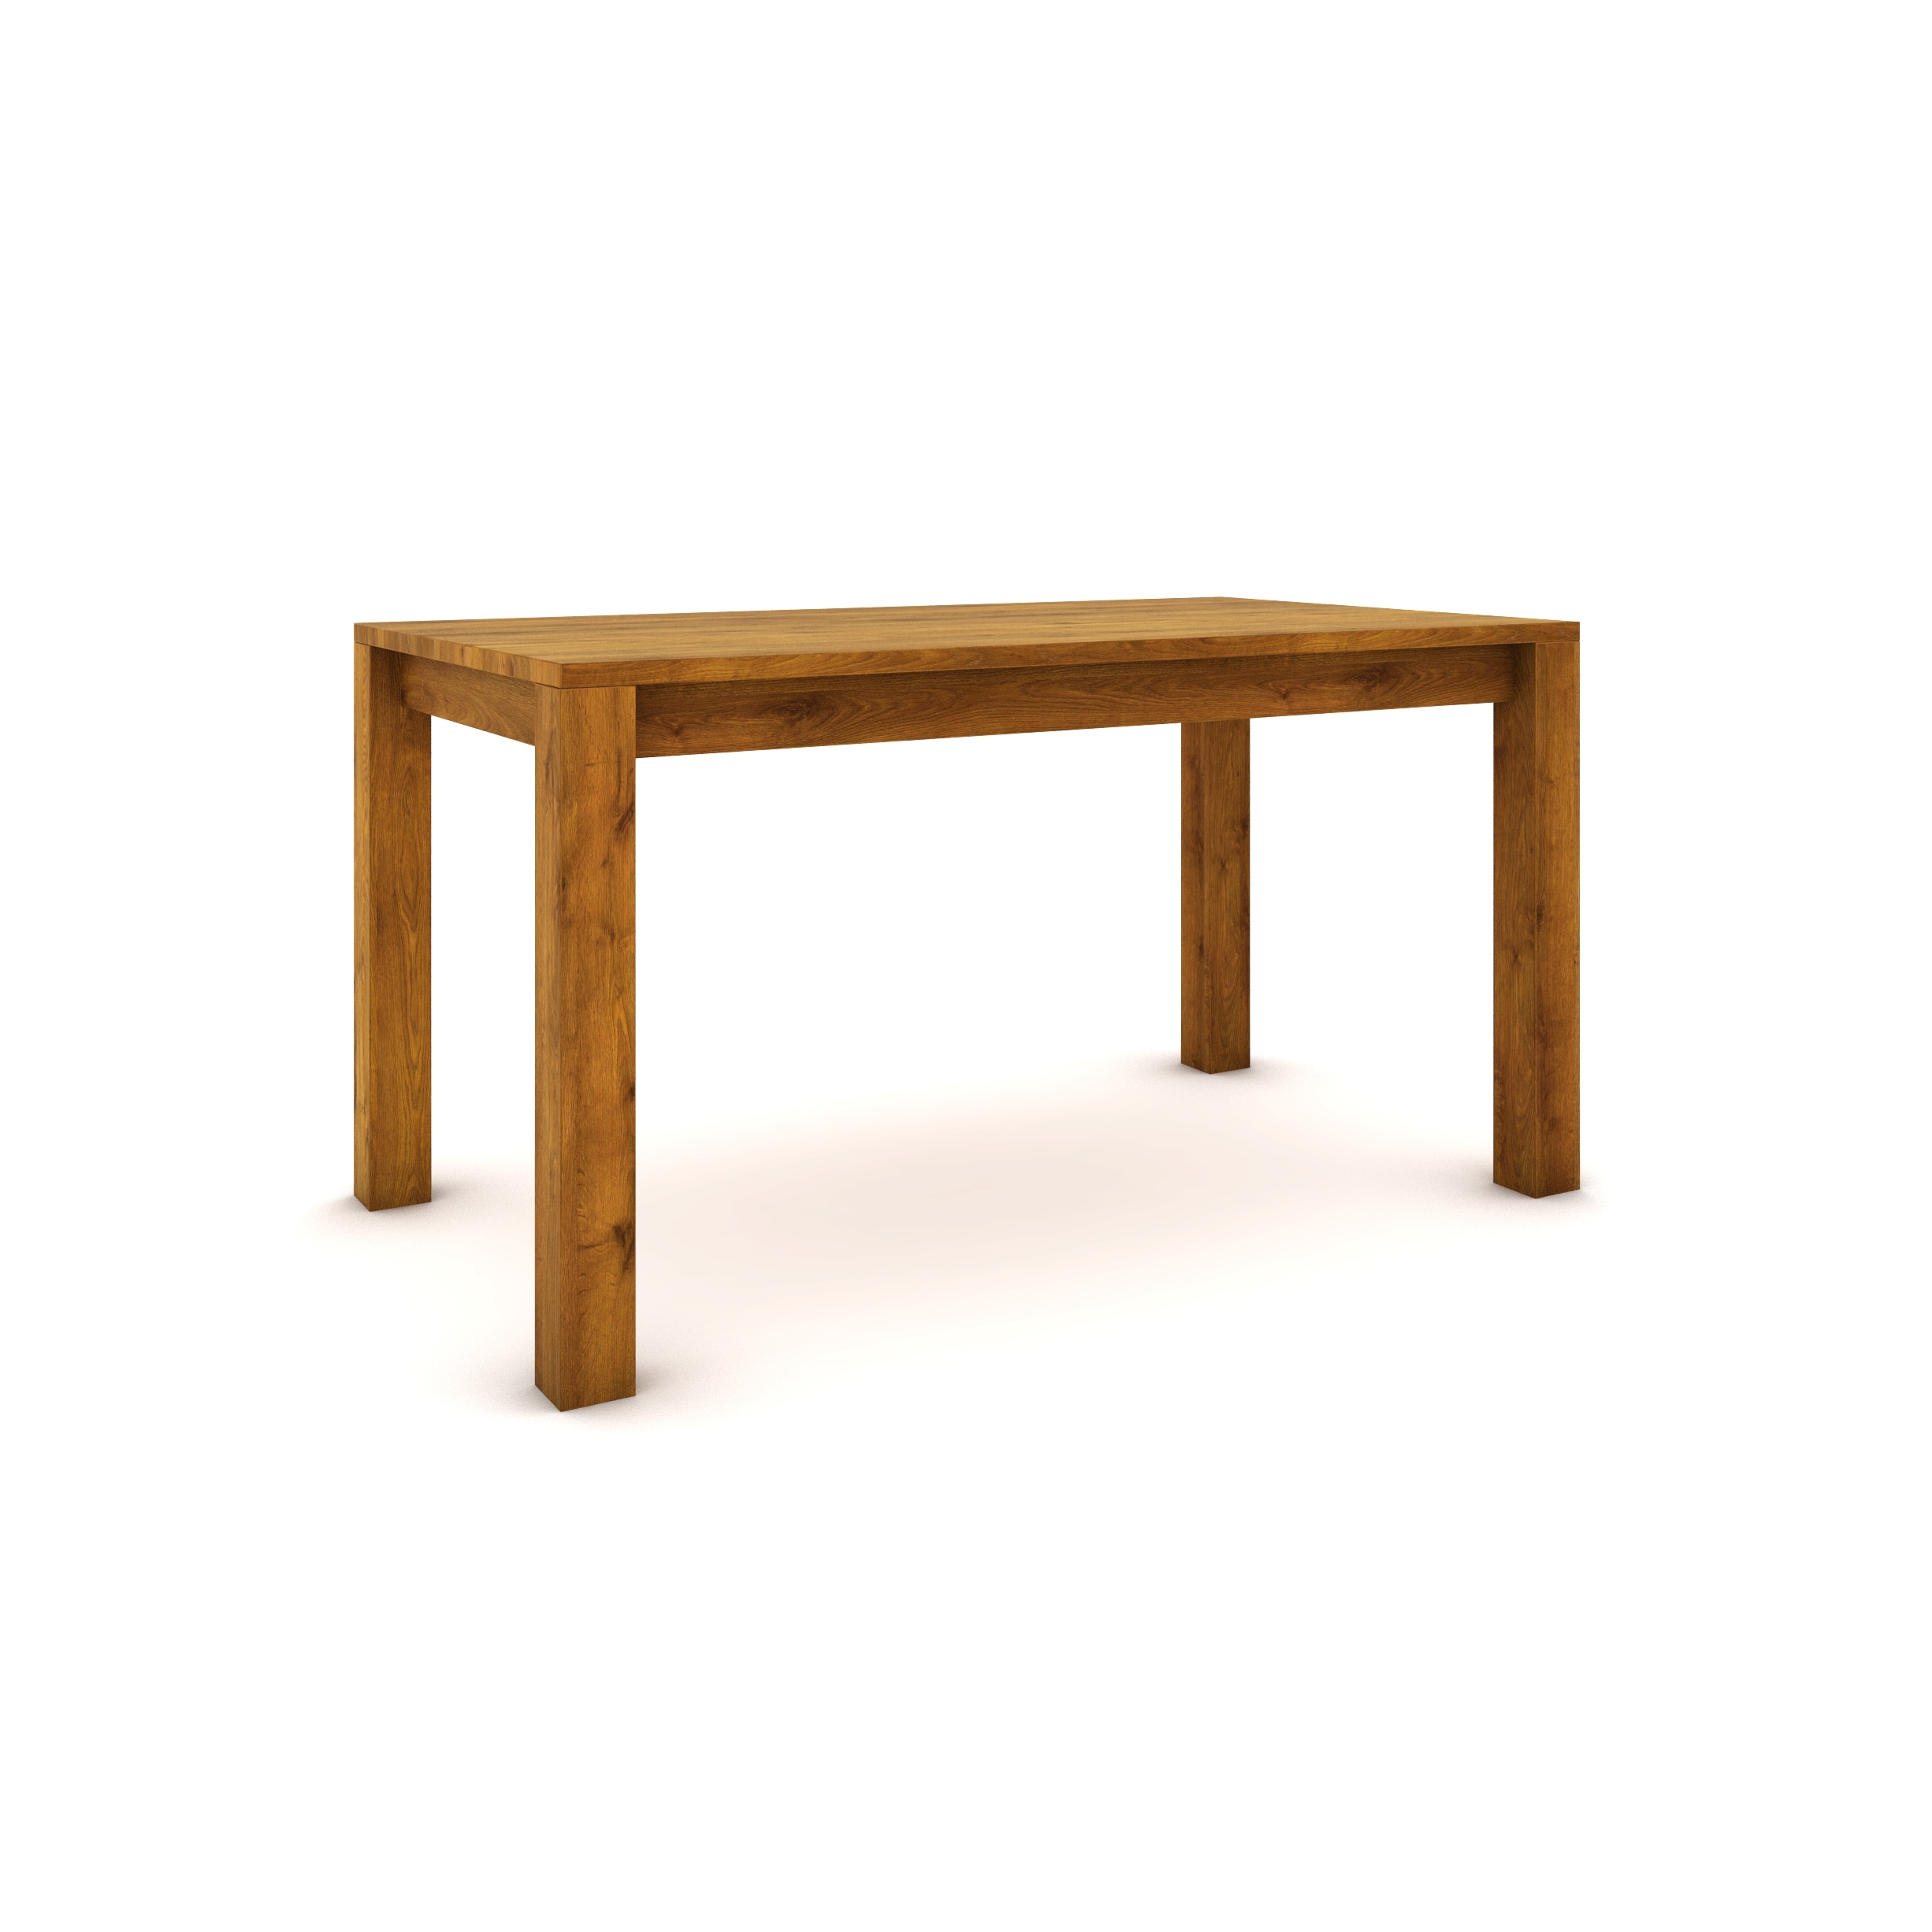 Dubový stůl 140 x 80 cm , jantarový